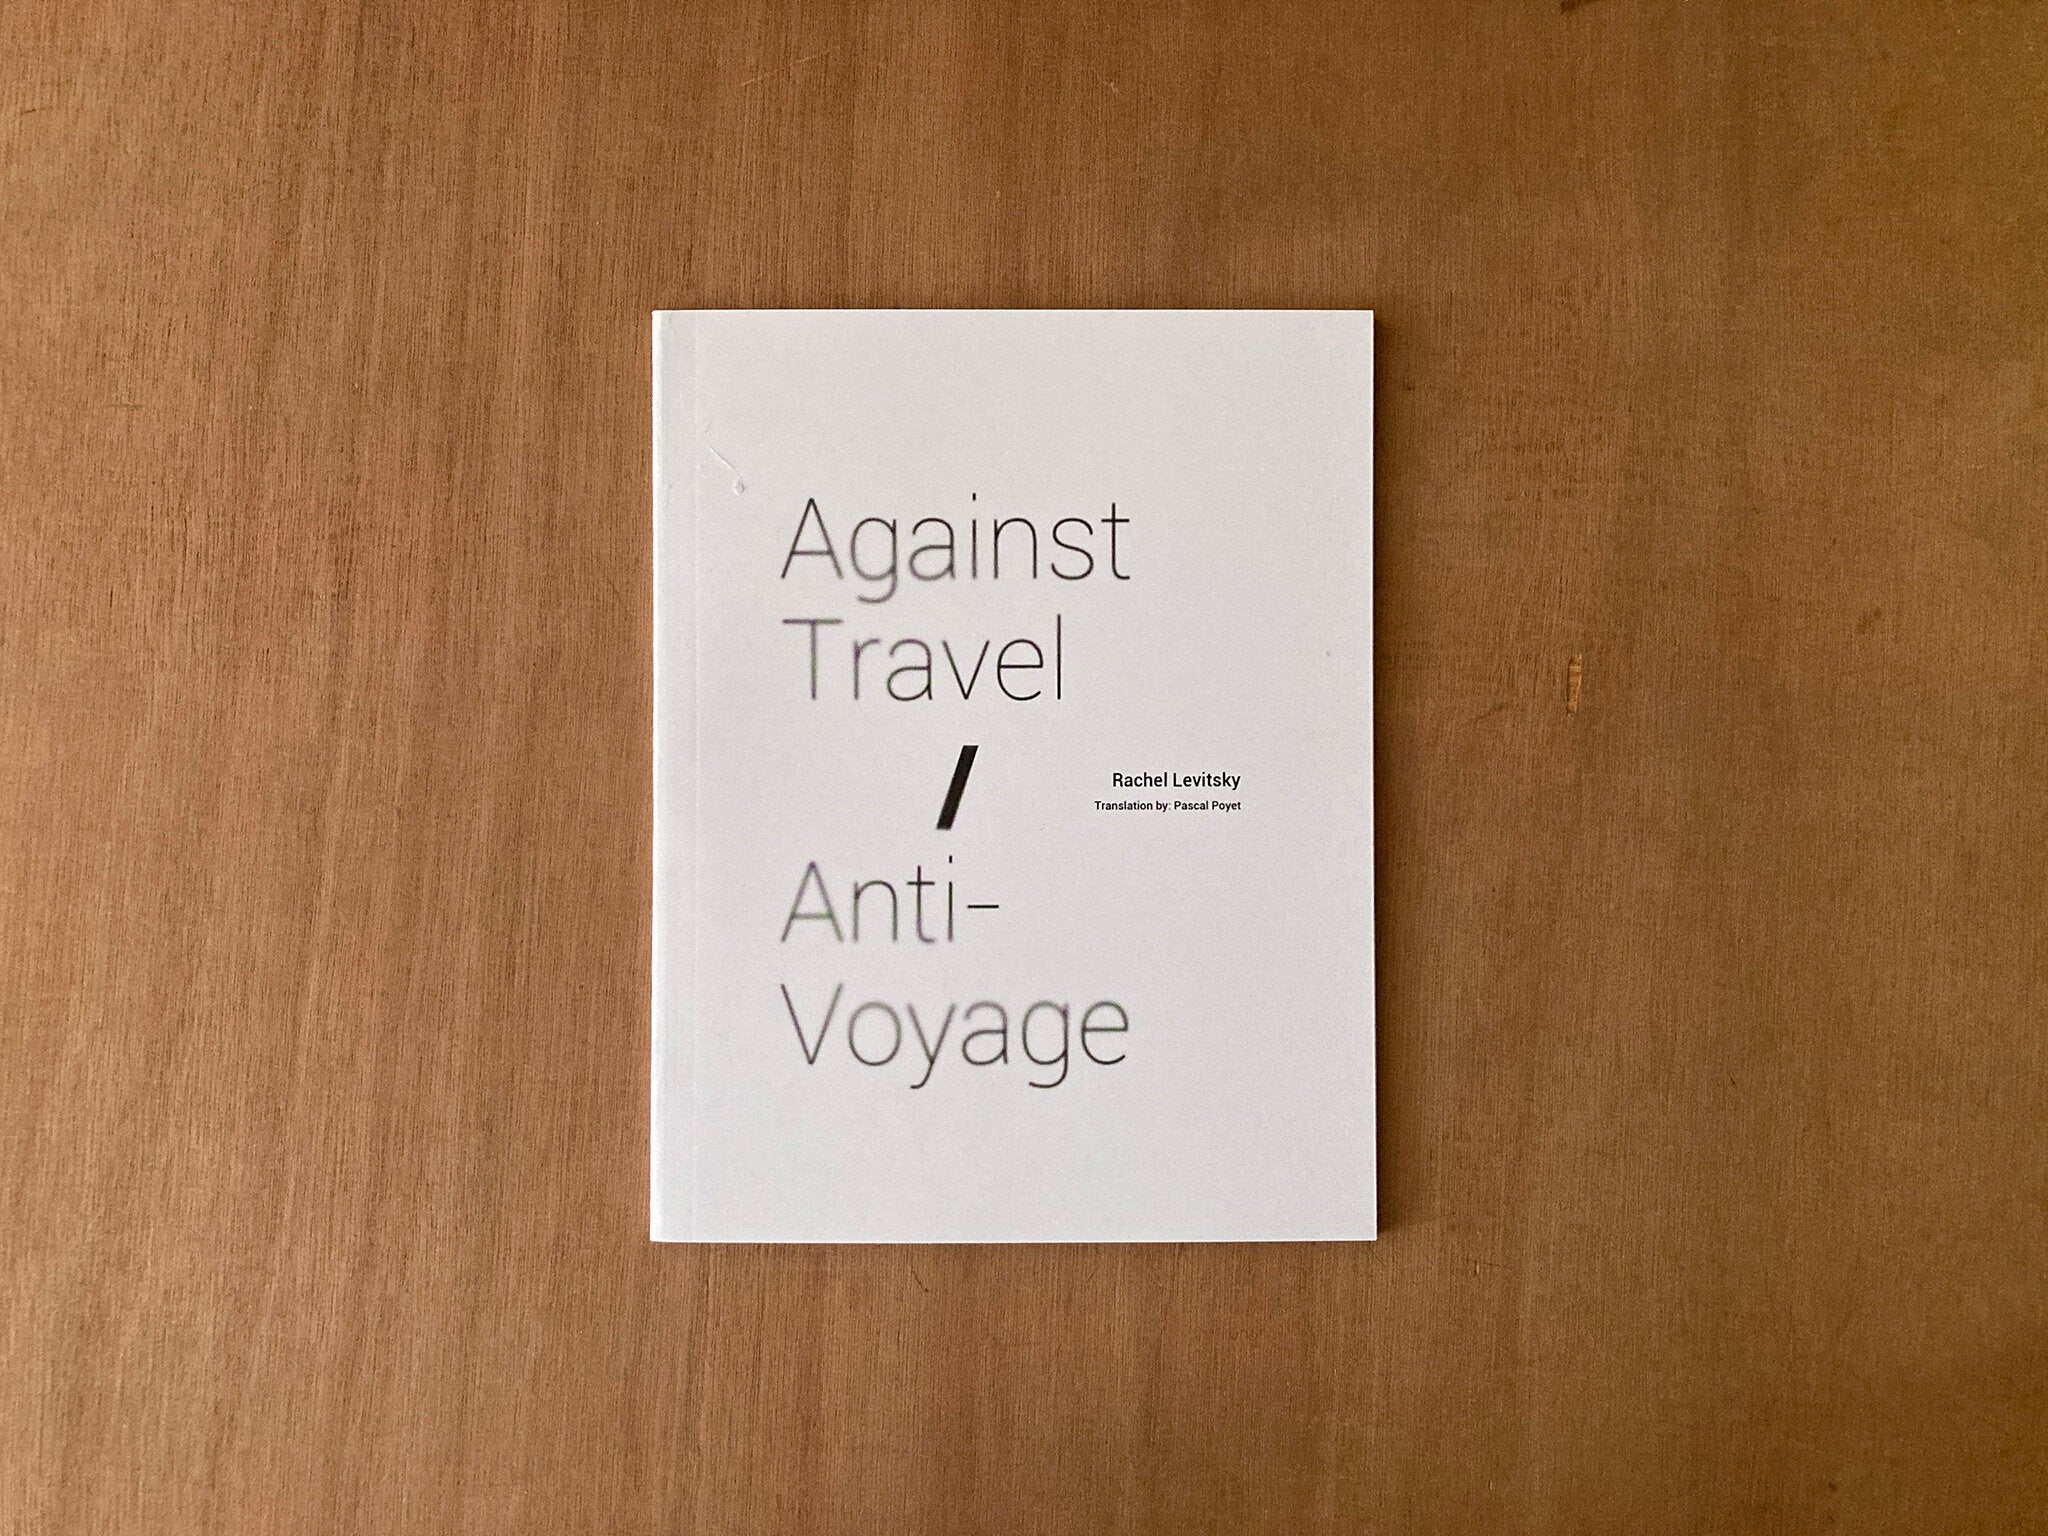 AGAINST TRAVEL / ANTI-VOYAGE by Rachel Levitsky